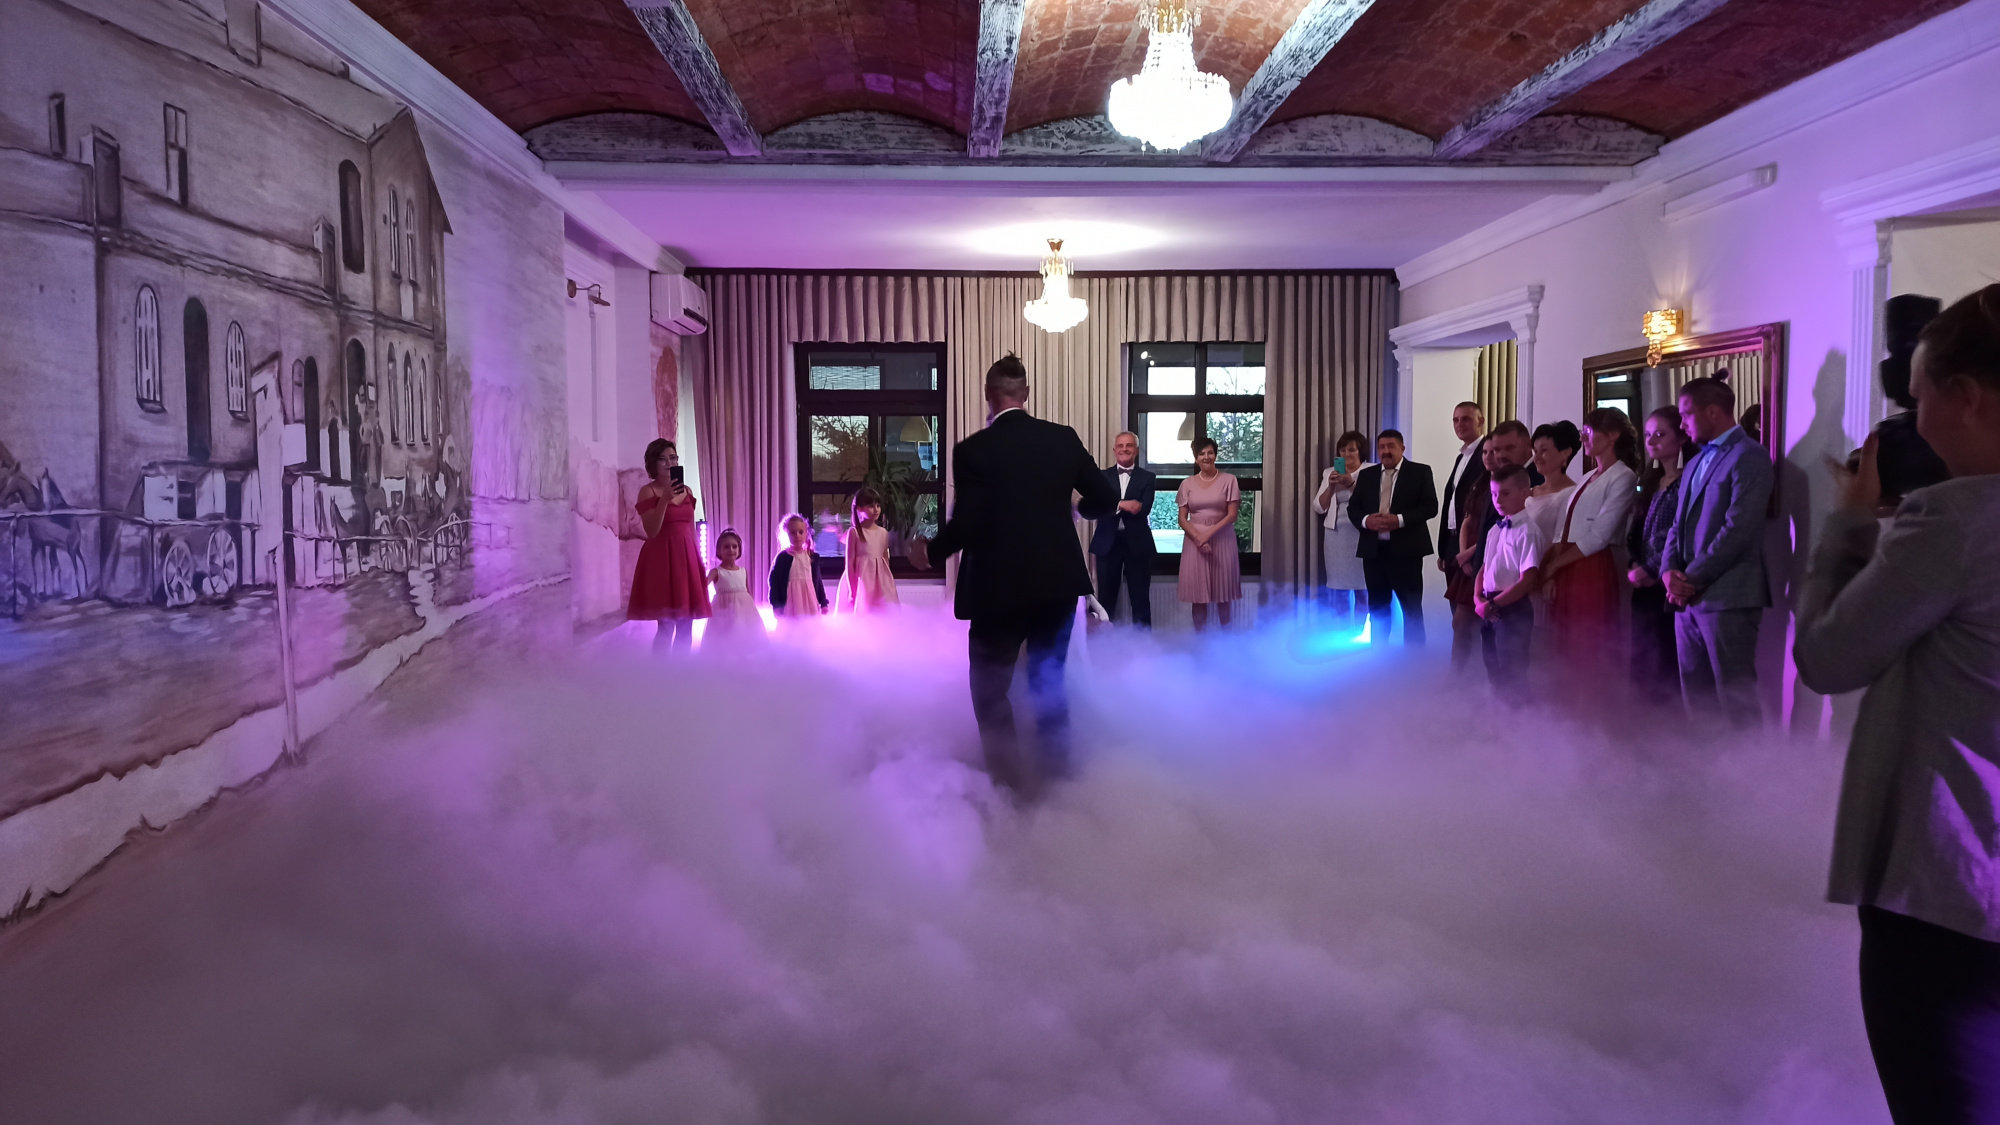 Dekoracja w postaci ciężkiego dymu na pierwszys taniec podświetlanego dodatkowo światłem LED